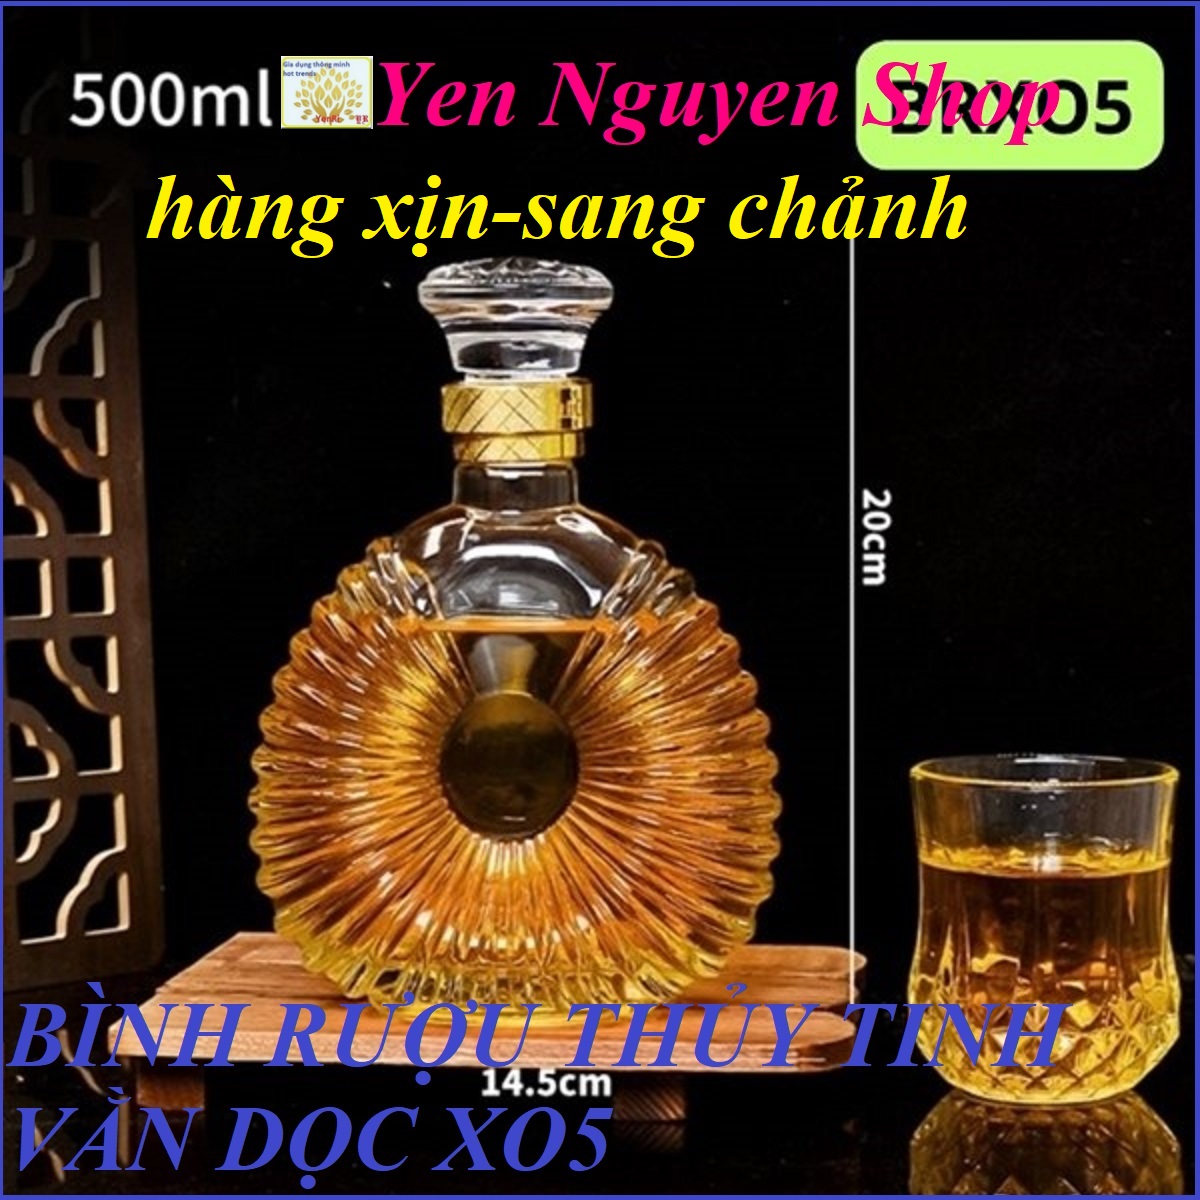 Bình rượu thủy tinh vằn dọc 500ml XO5 - Yen Nguyen Shop